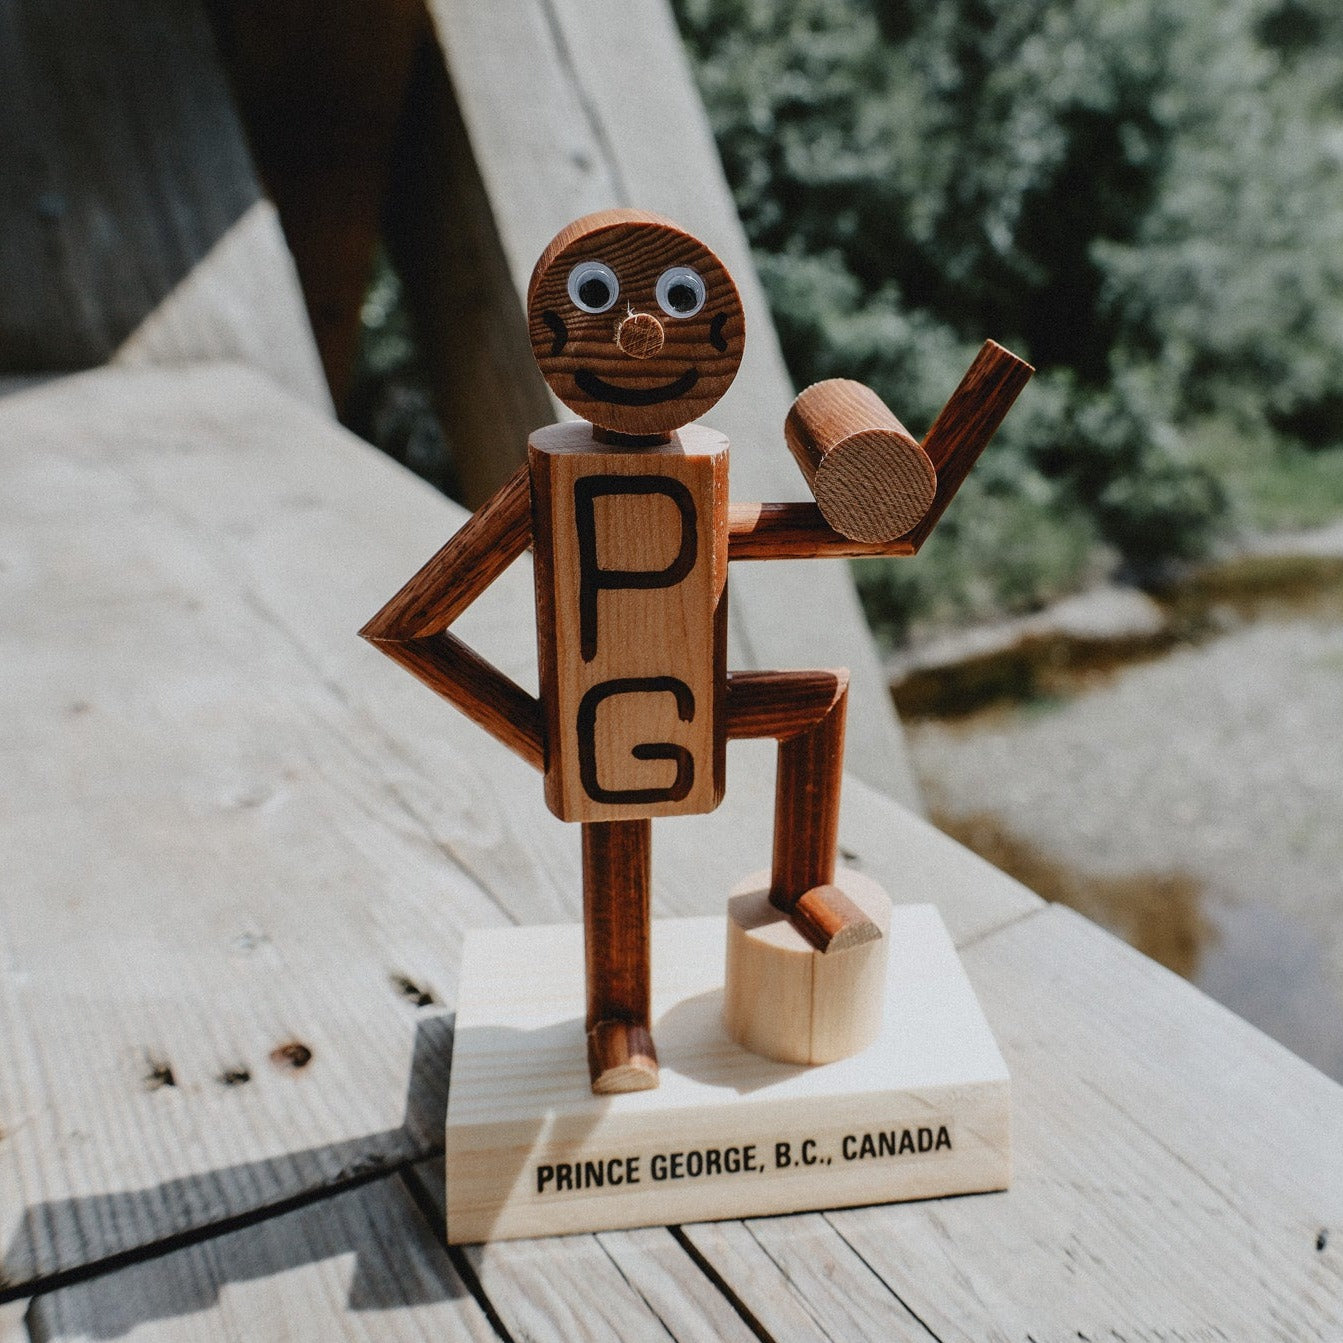 Mr. PG Wooden Figurine